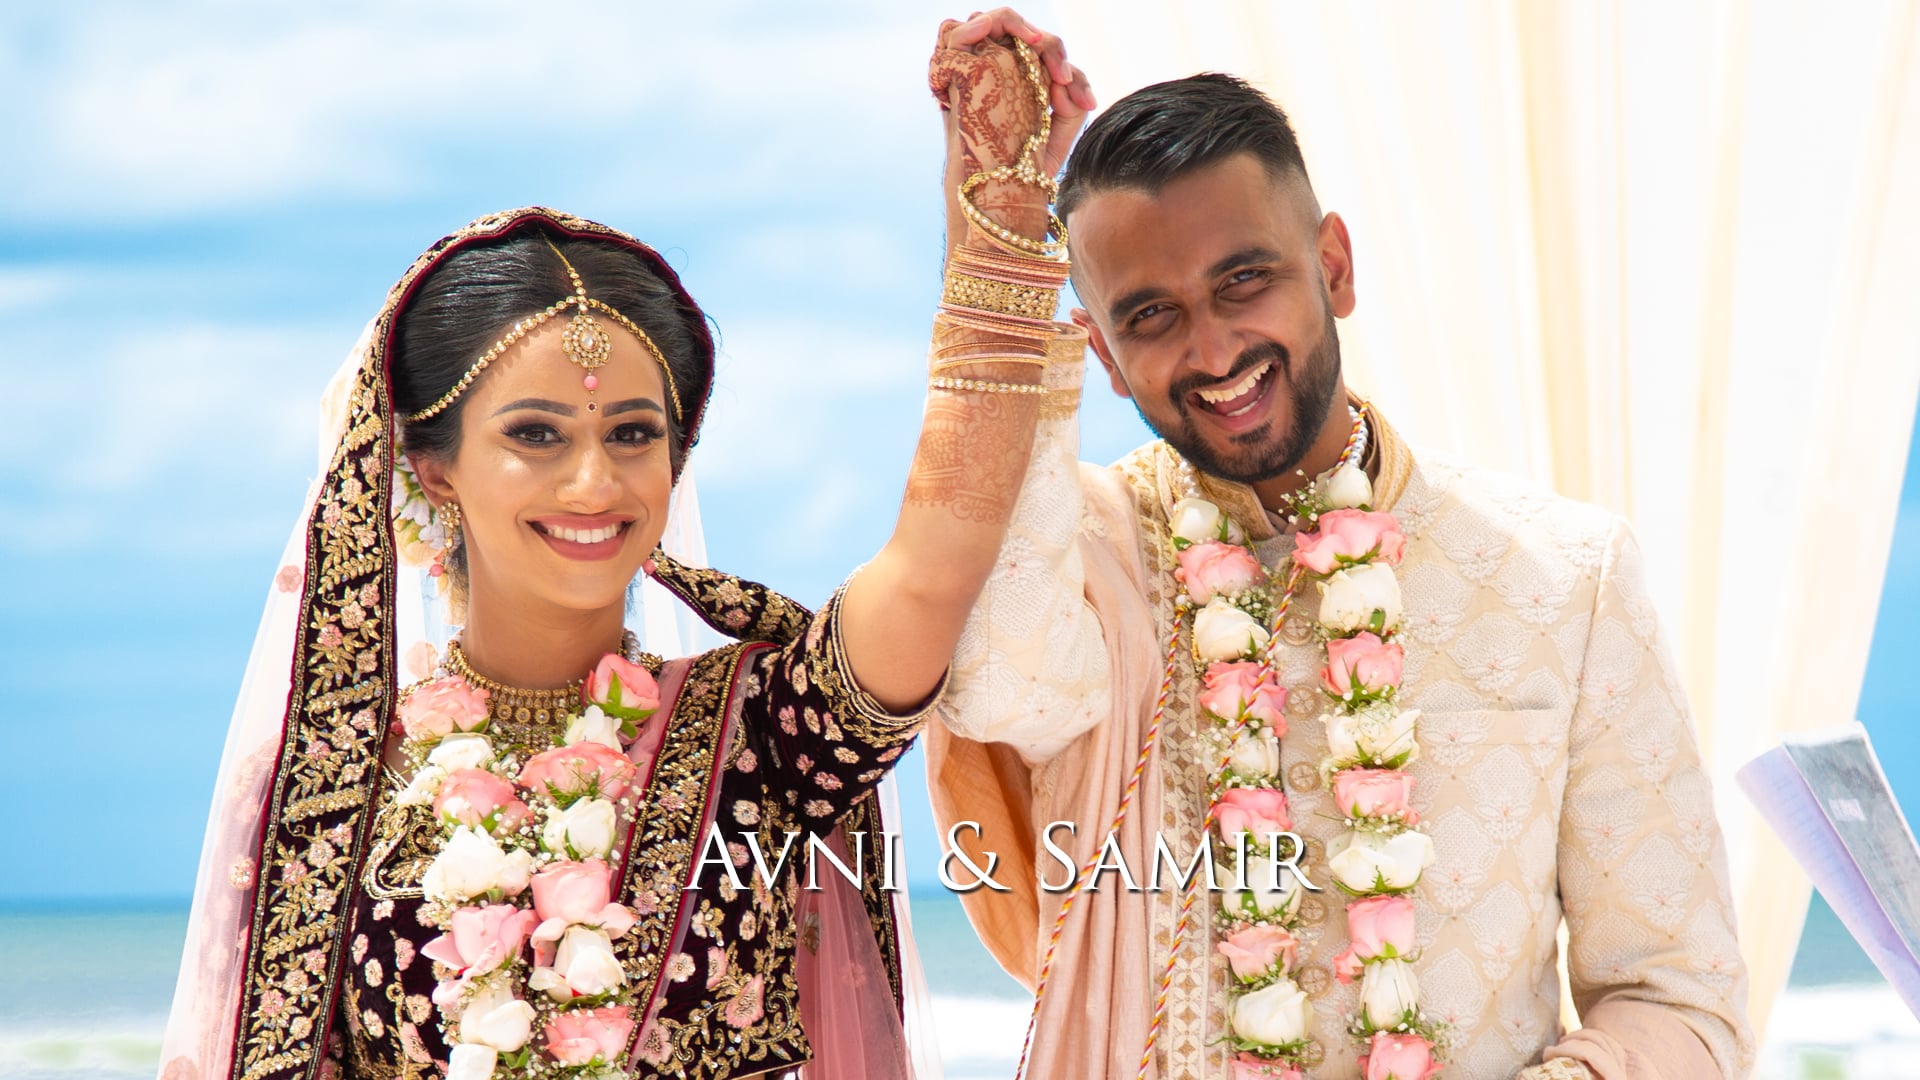 Avni & Samir - Destination Wedding - Goa